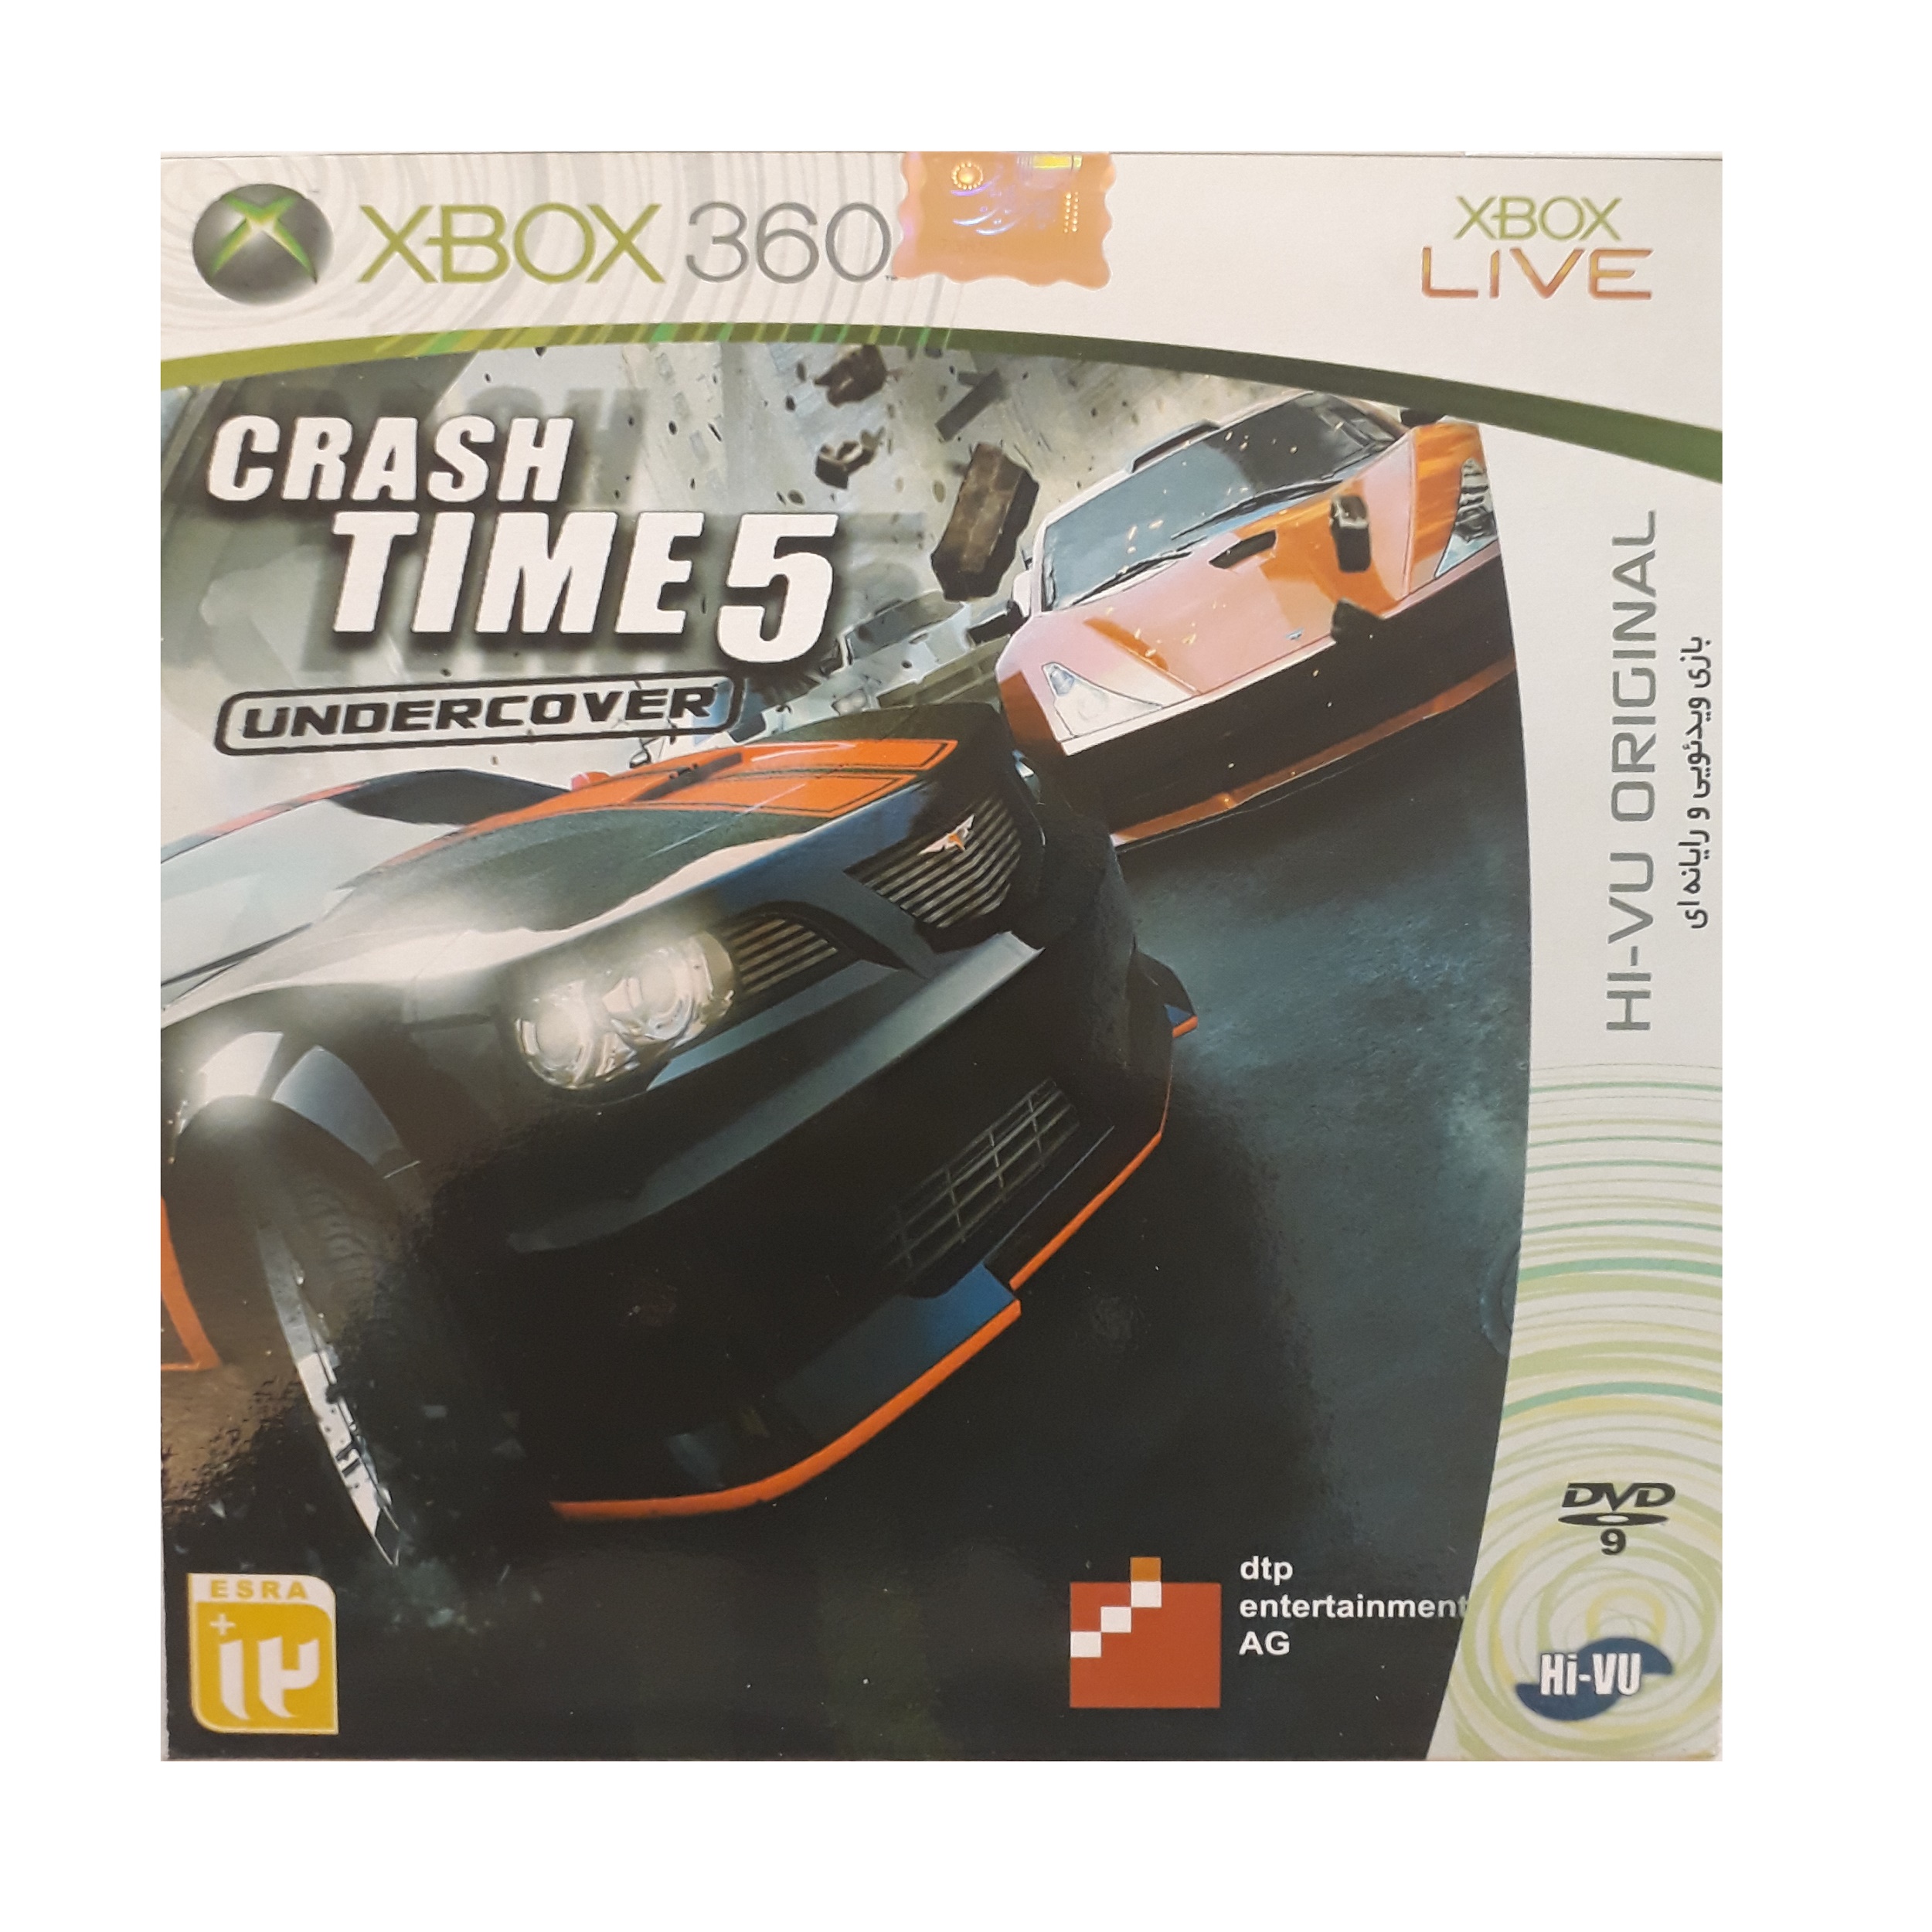 بازی crash time 5 مخصوص xbox 360